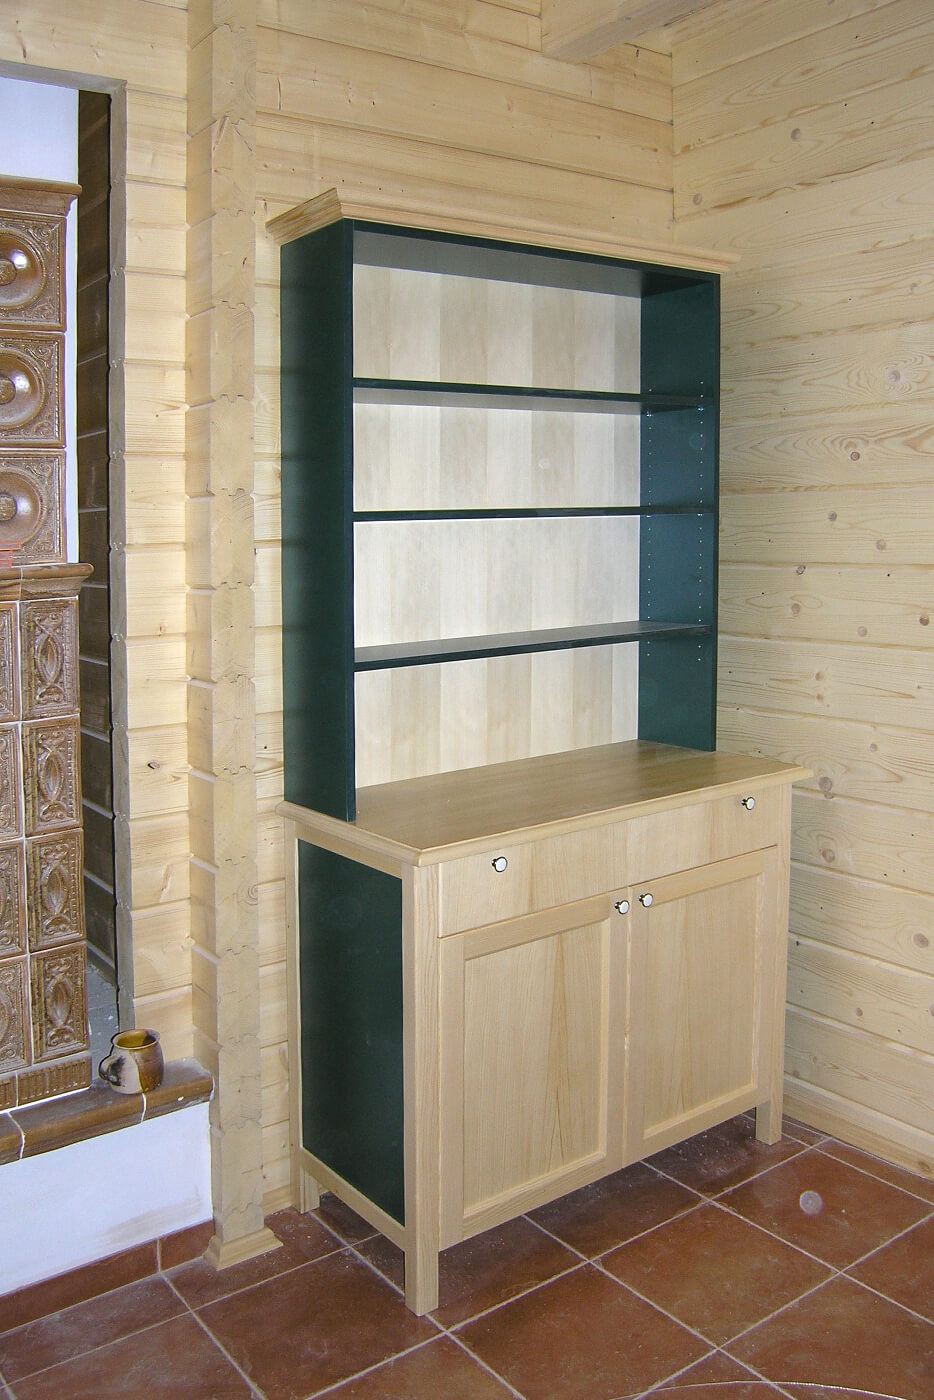 Říha interiér - výroba dřevěného nábytku